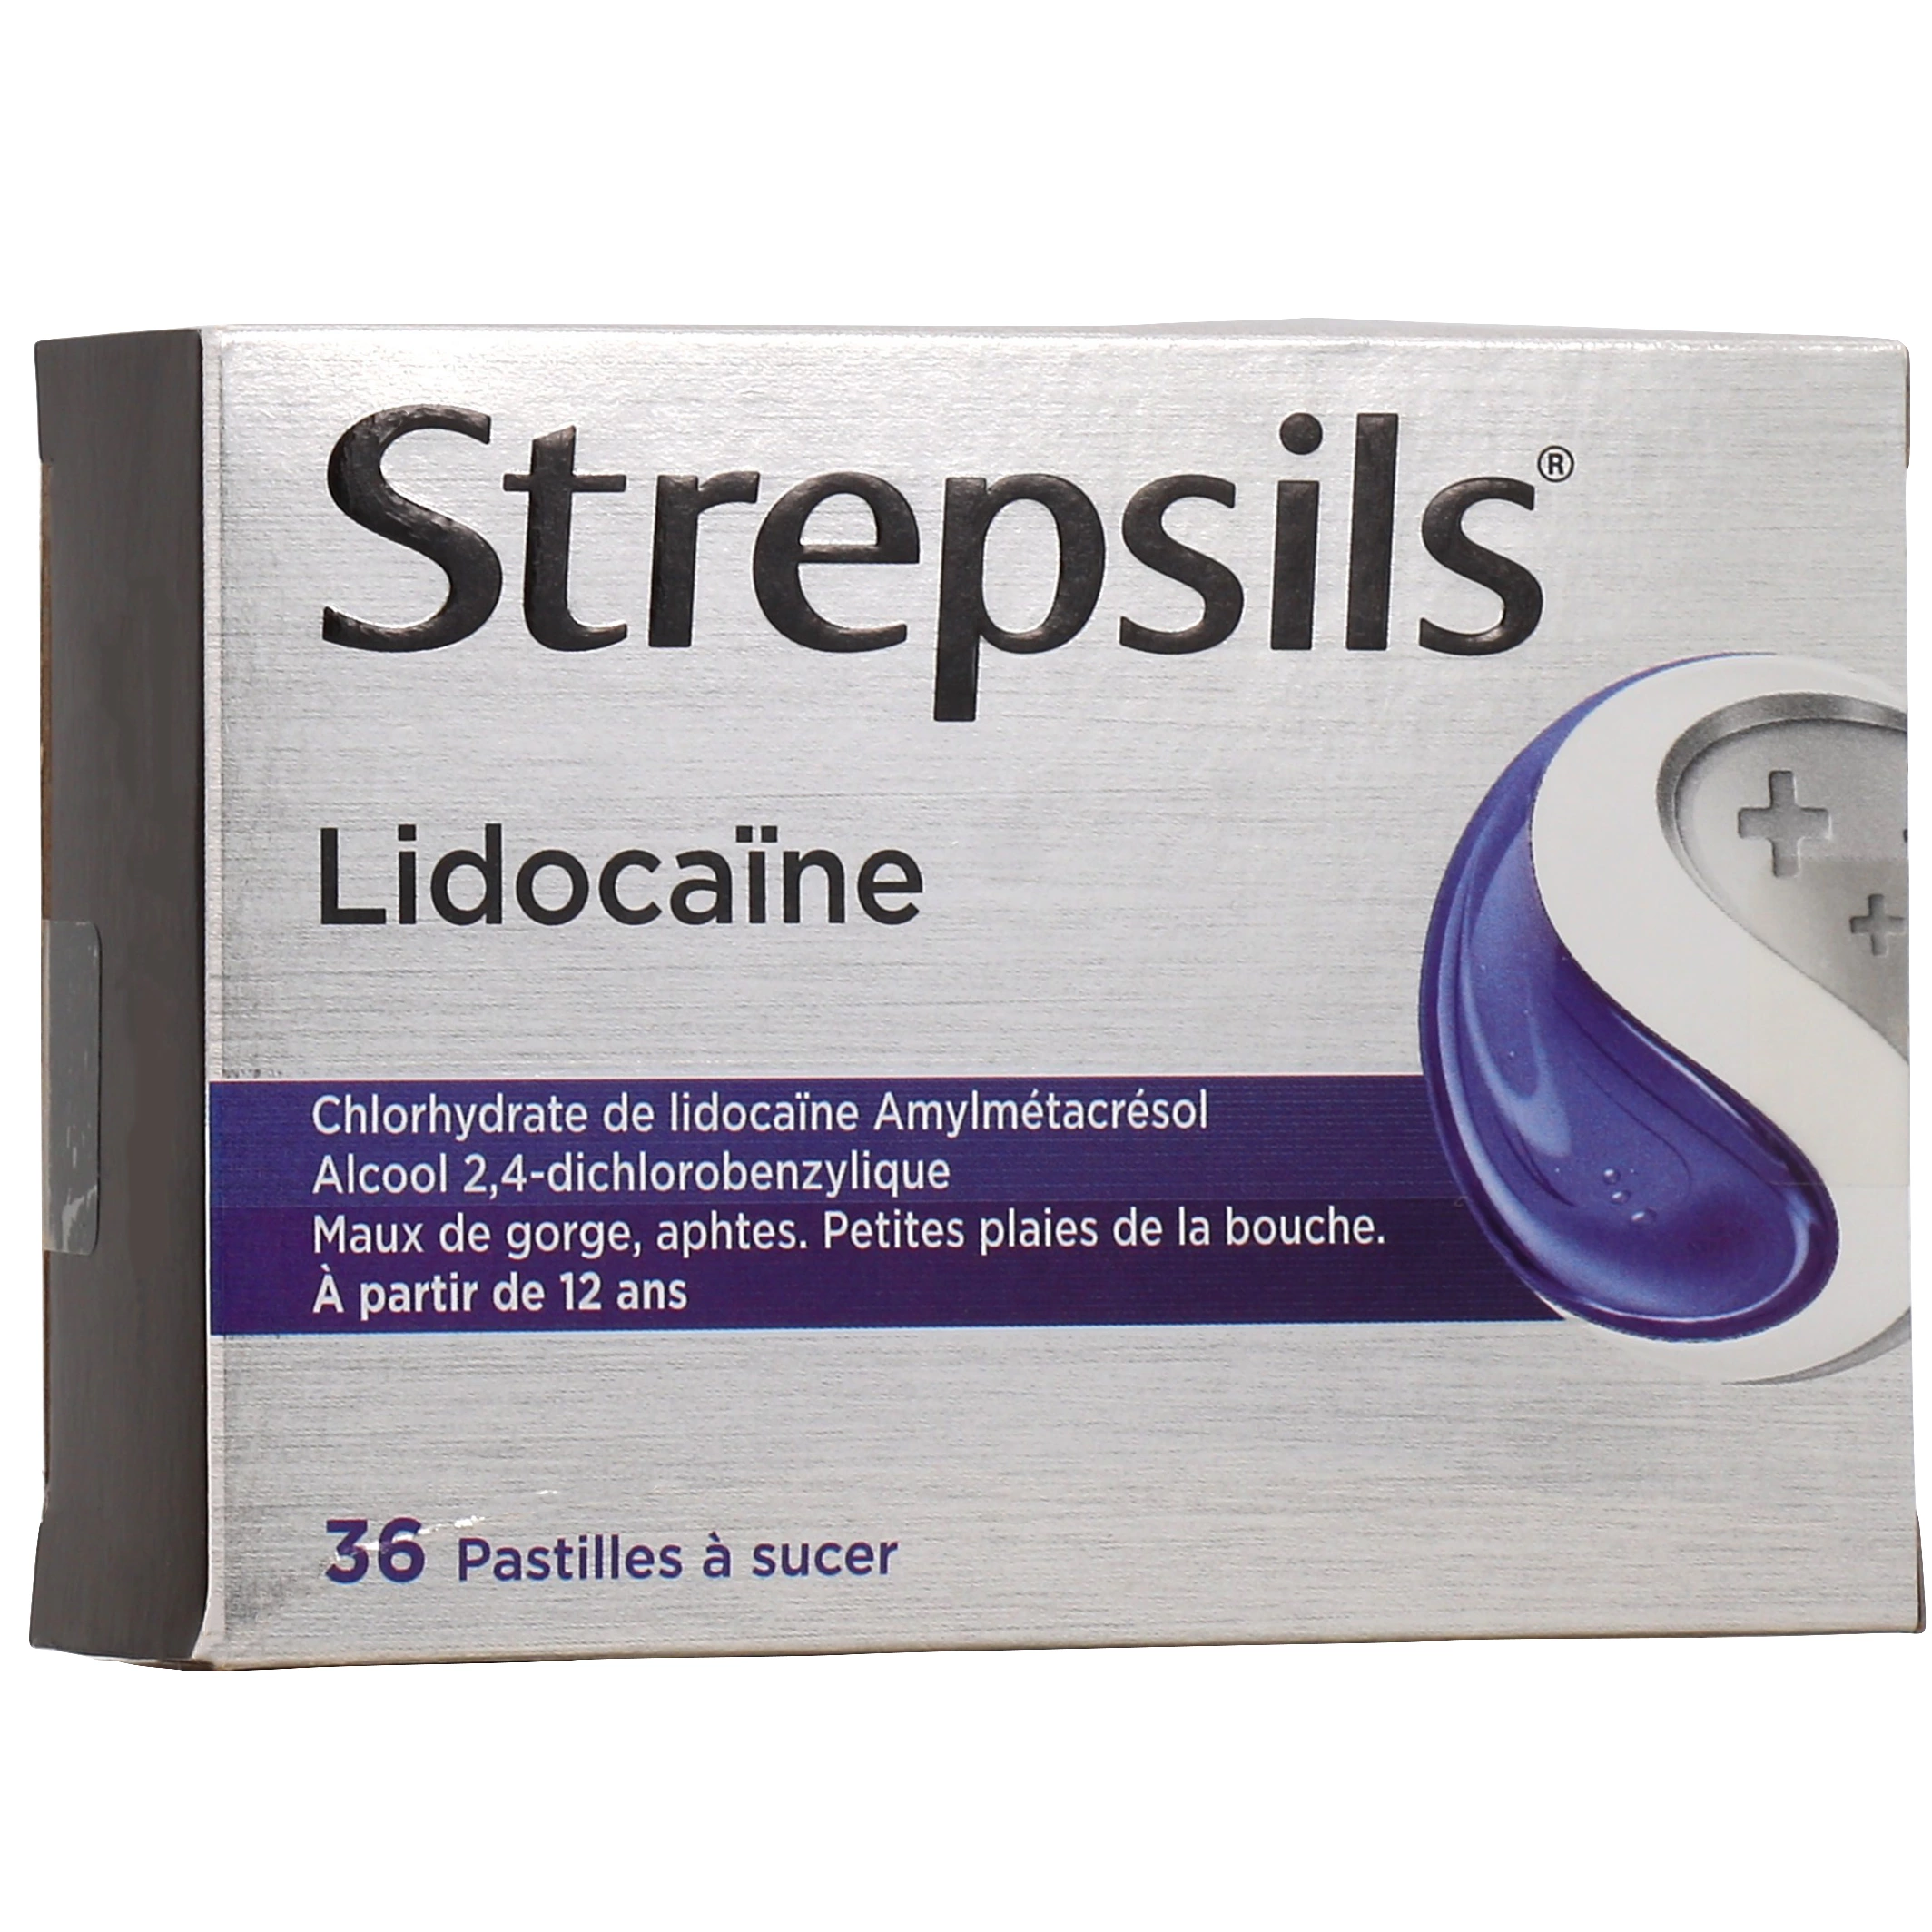 Strepsils lidocaïne pastille à sucer, 36 pastilles